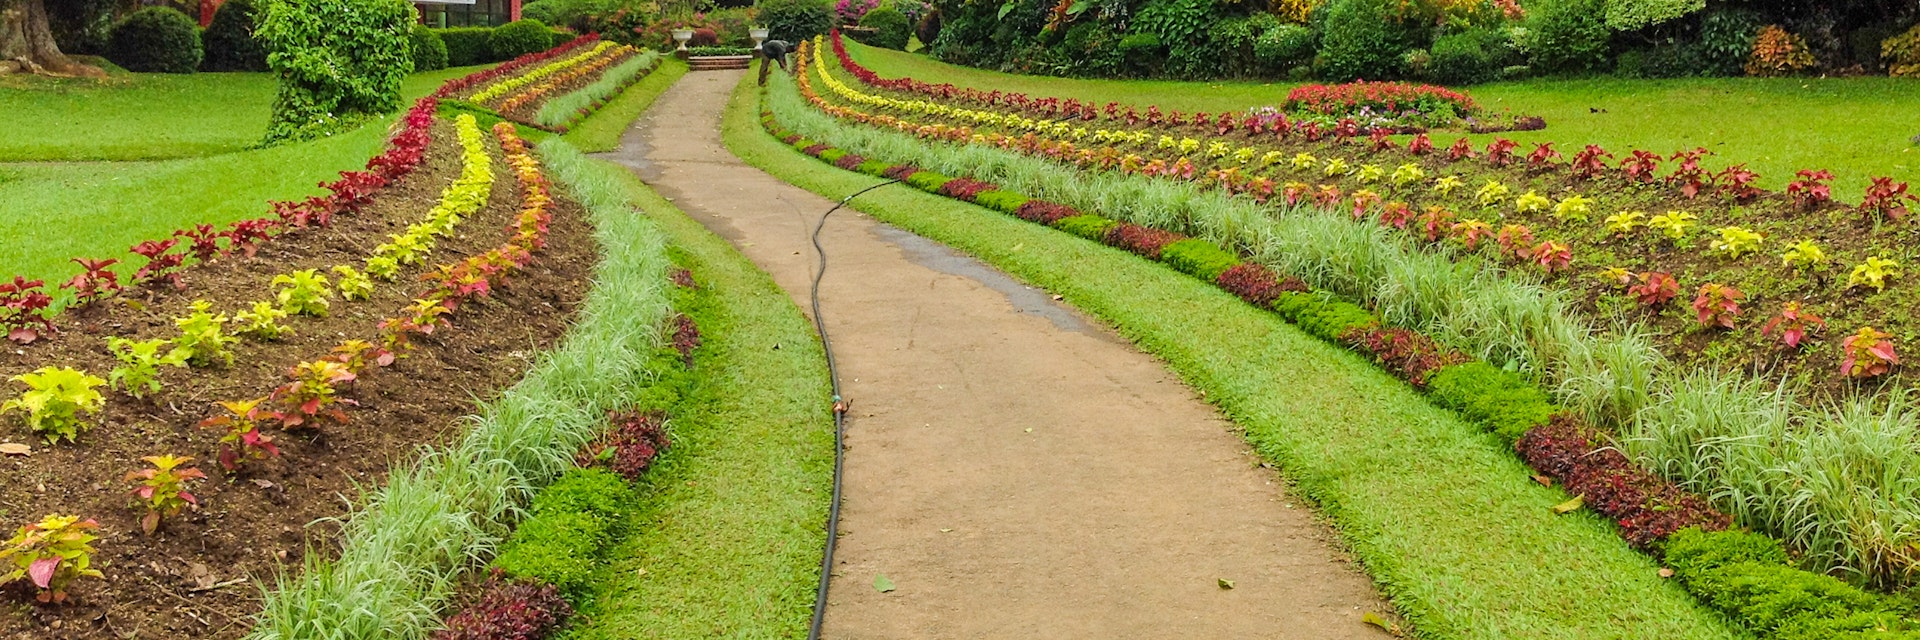 Royal Botanical Garden in Peradeniya, Sri Lanka.